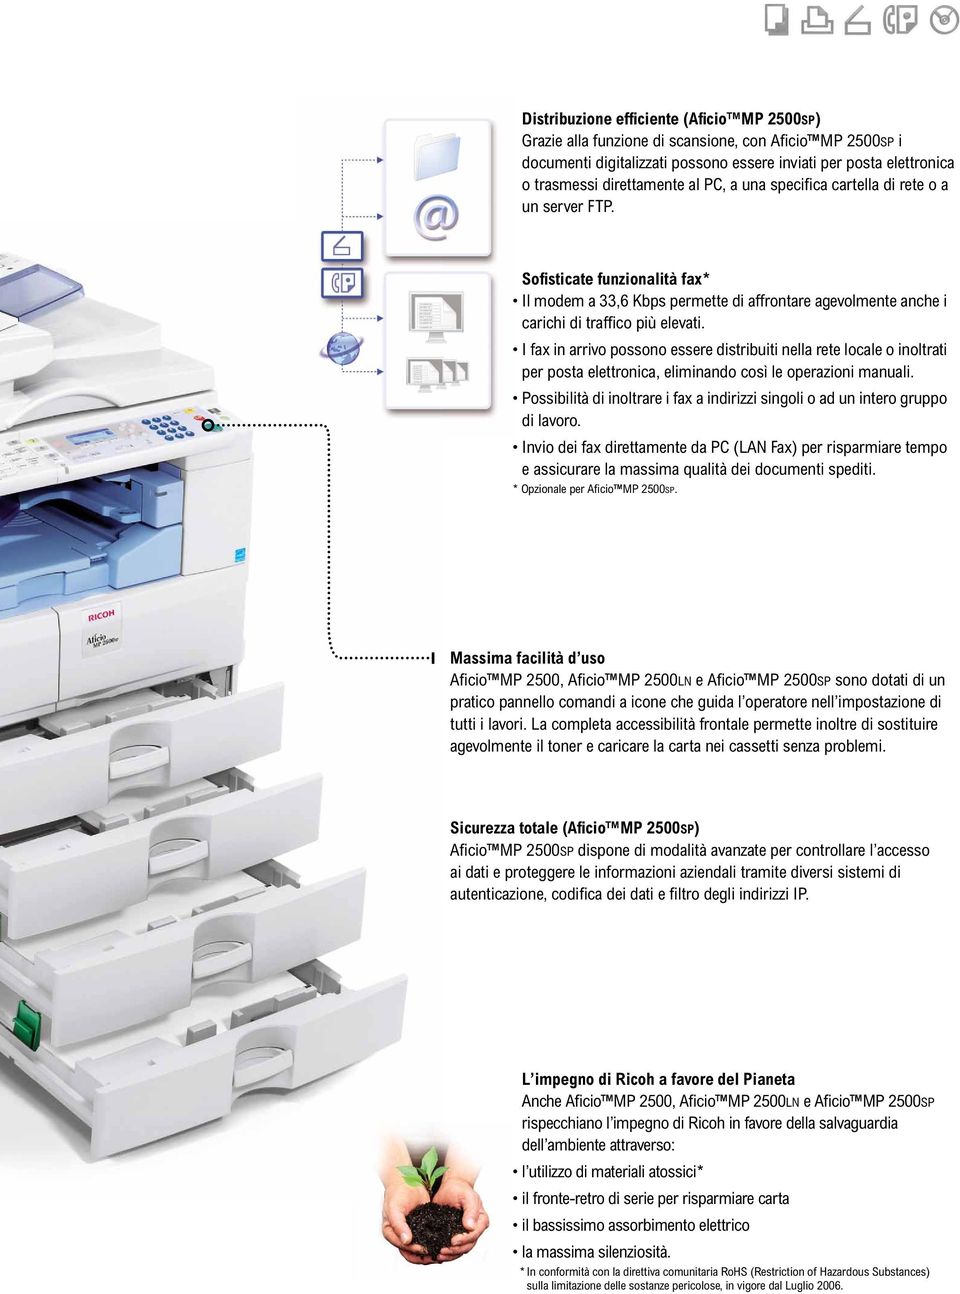 I fax in arrivo possono essere distribuiti nella rete locale o inoltrati per posta elettronica, eliminando così le operazioni manuali.